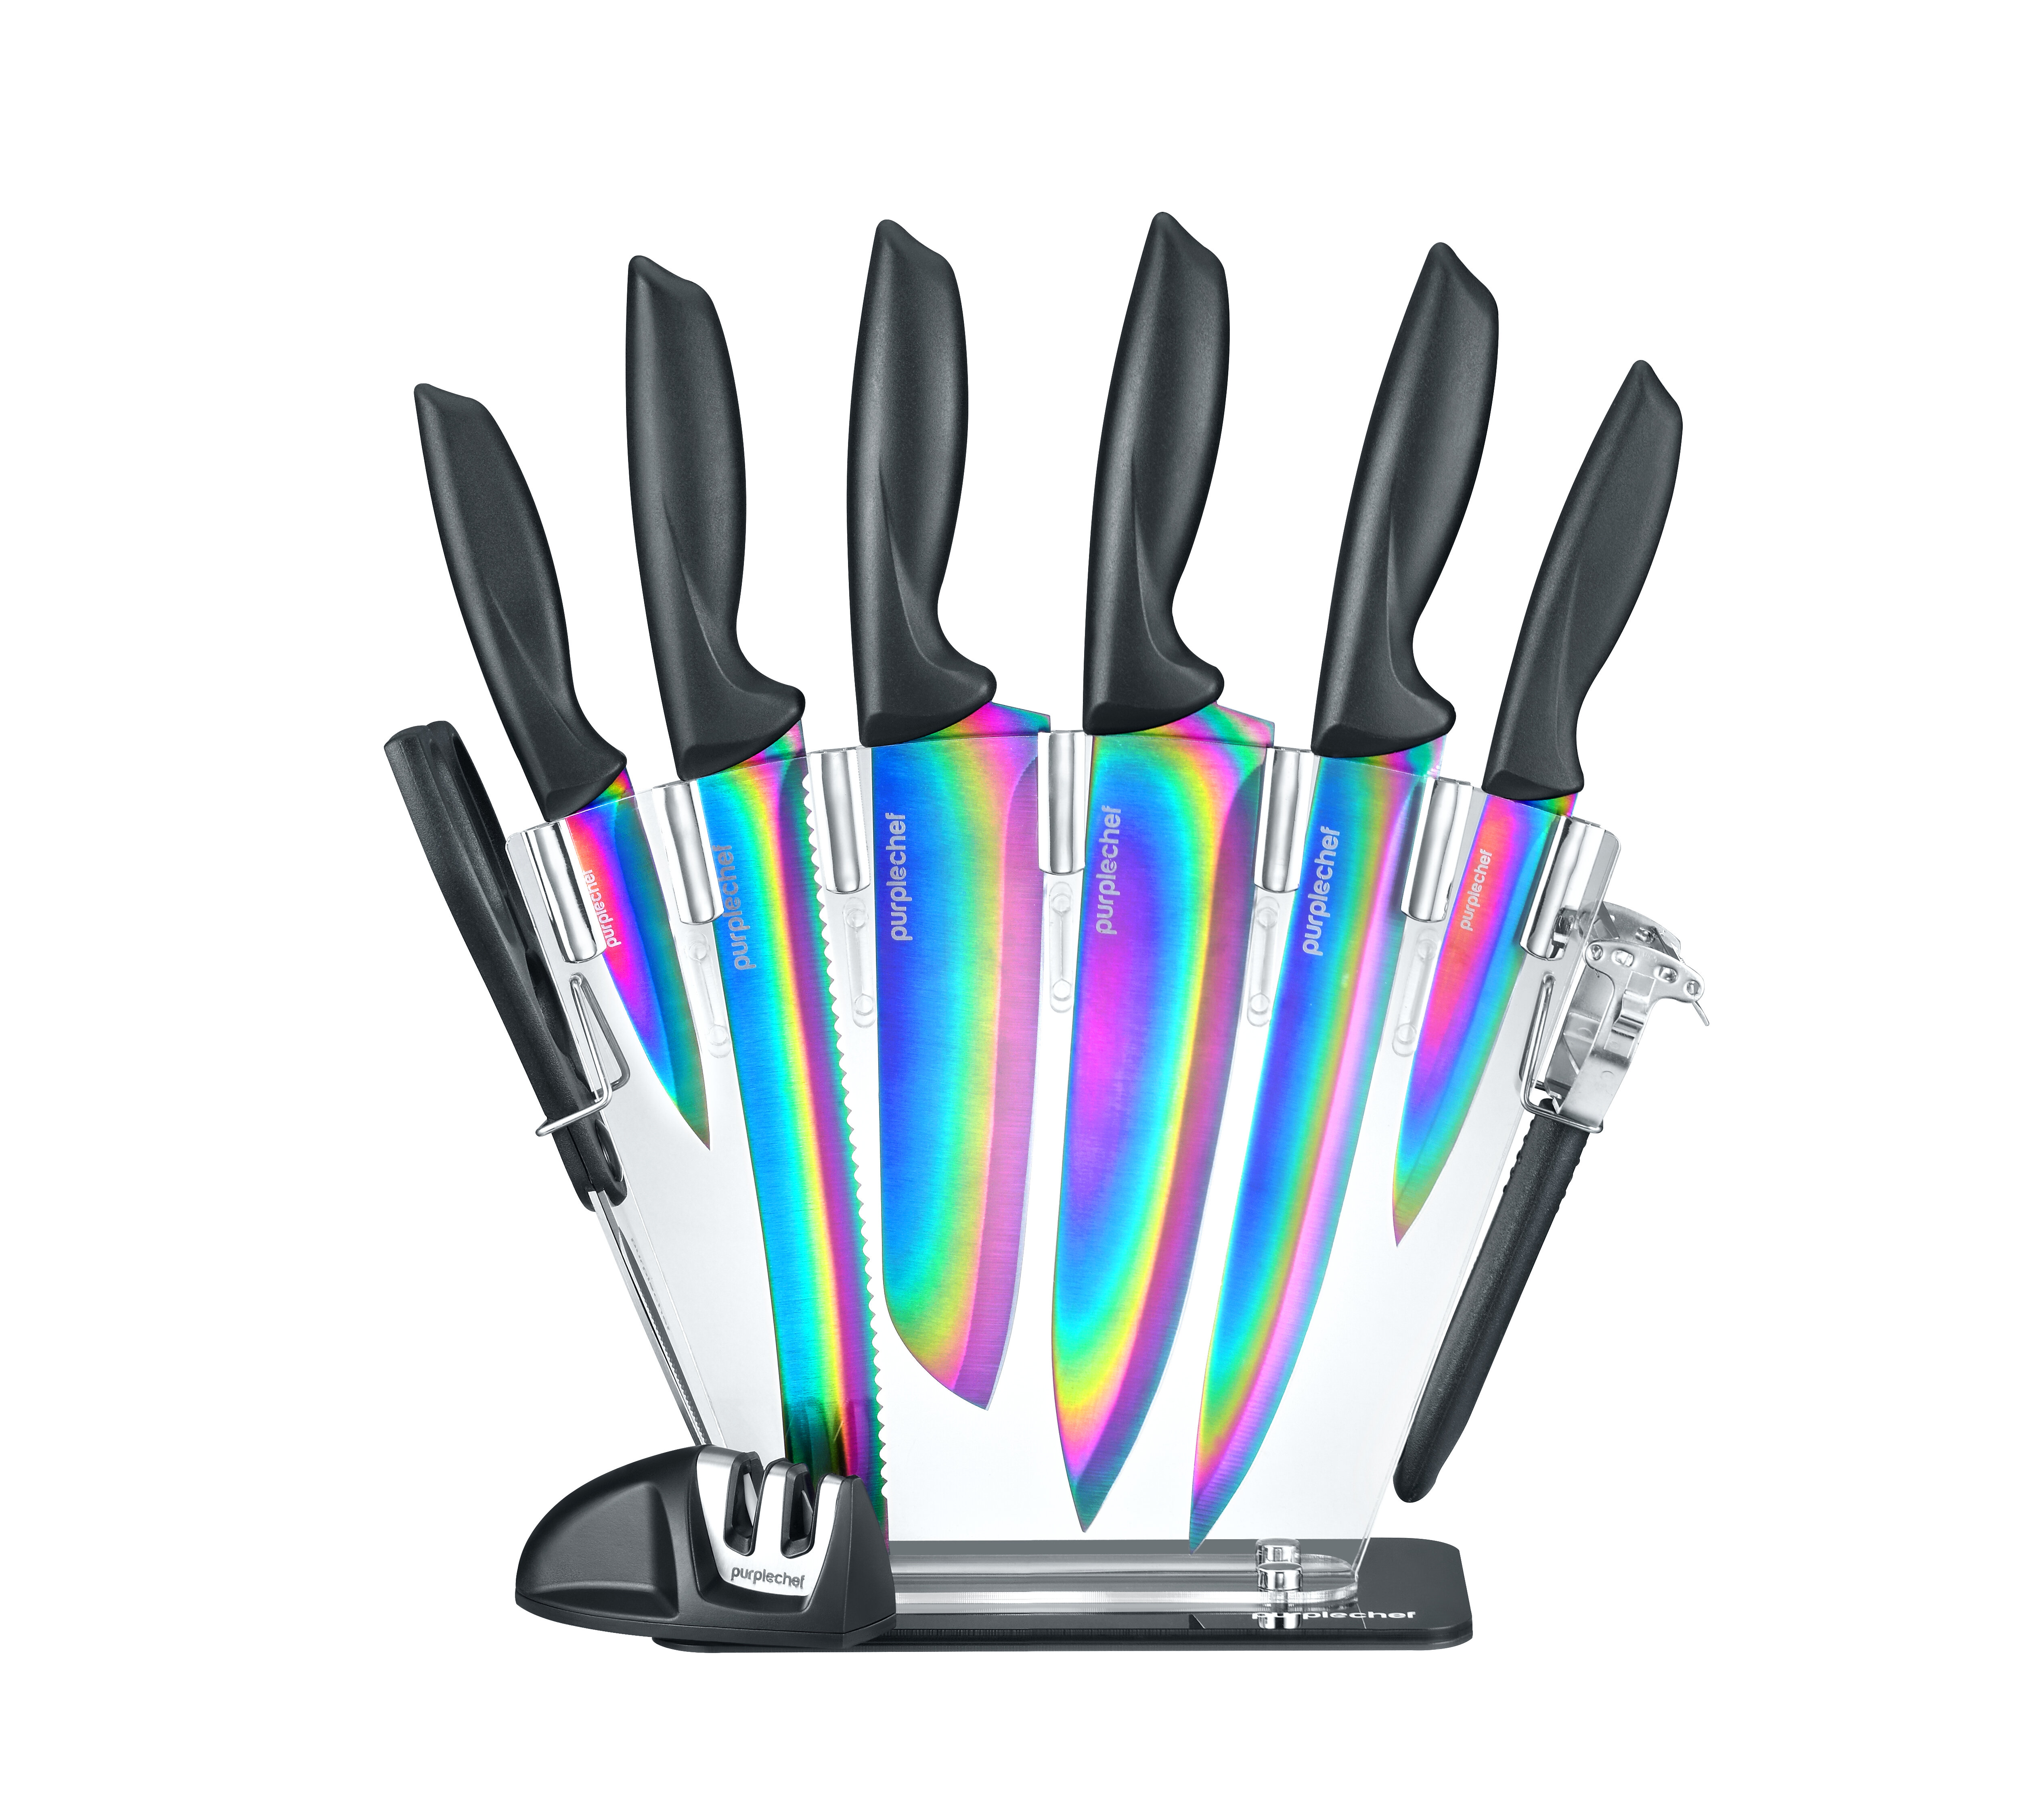 https://assets.wfcdn.com/im/55250791/compr-r85/1687/168770897/purplechef-10-piece-stainless-steel-assorted-knife-set.jpg